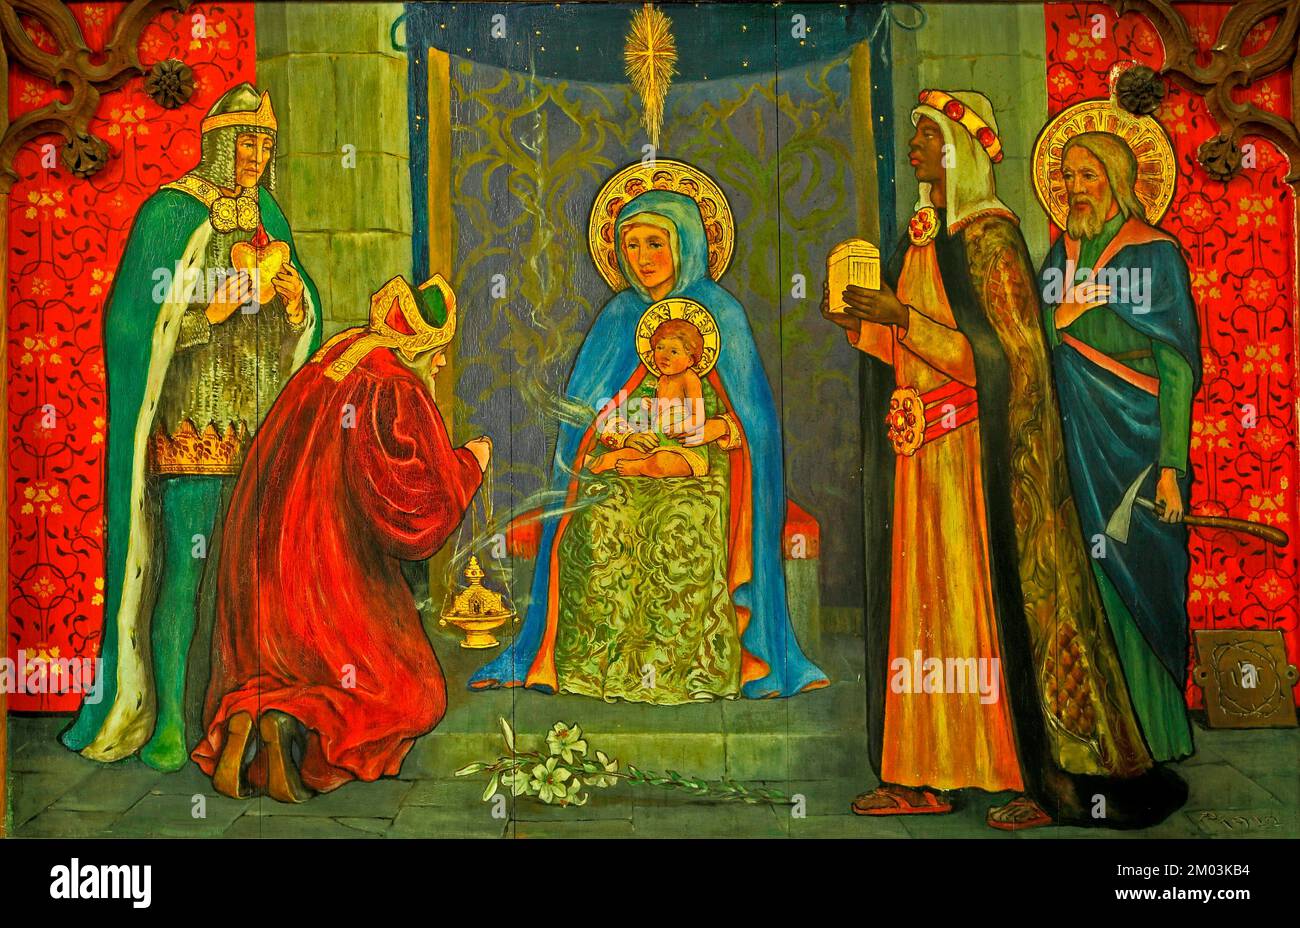 The Magi, en présentant des cadeaux à Jésus, peinture sur bois, Langham, Norfolk, Angleterre, ROYAUME-UNI Banque D'Images